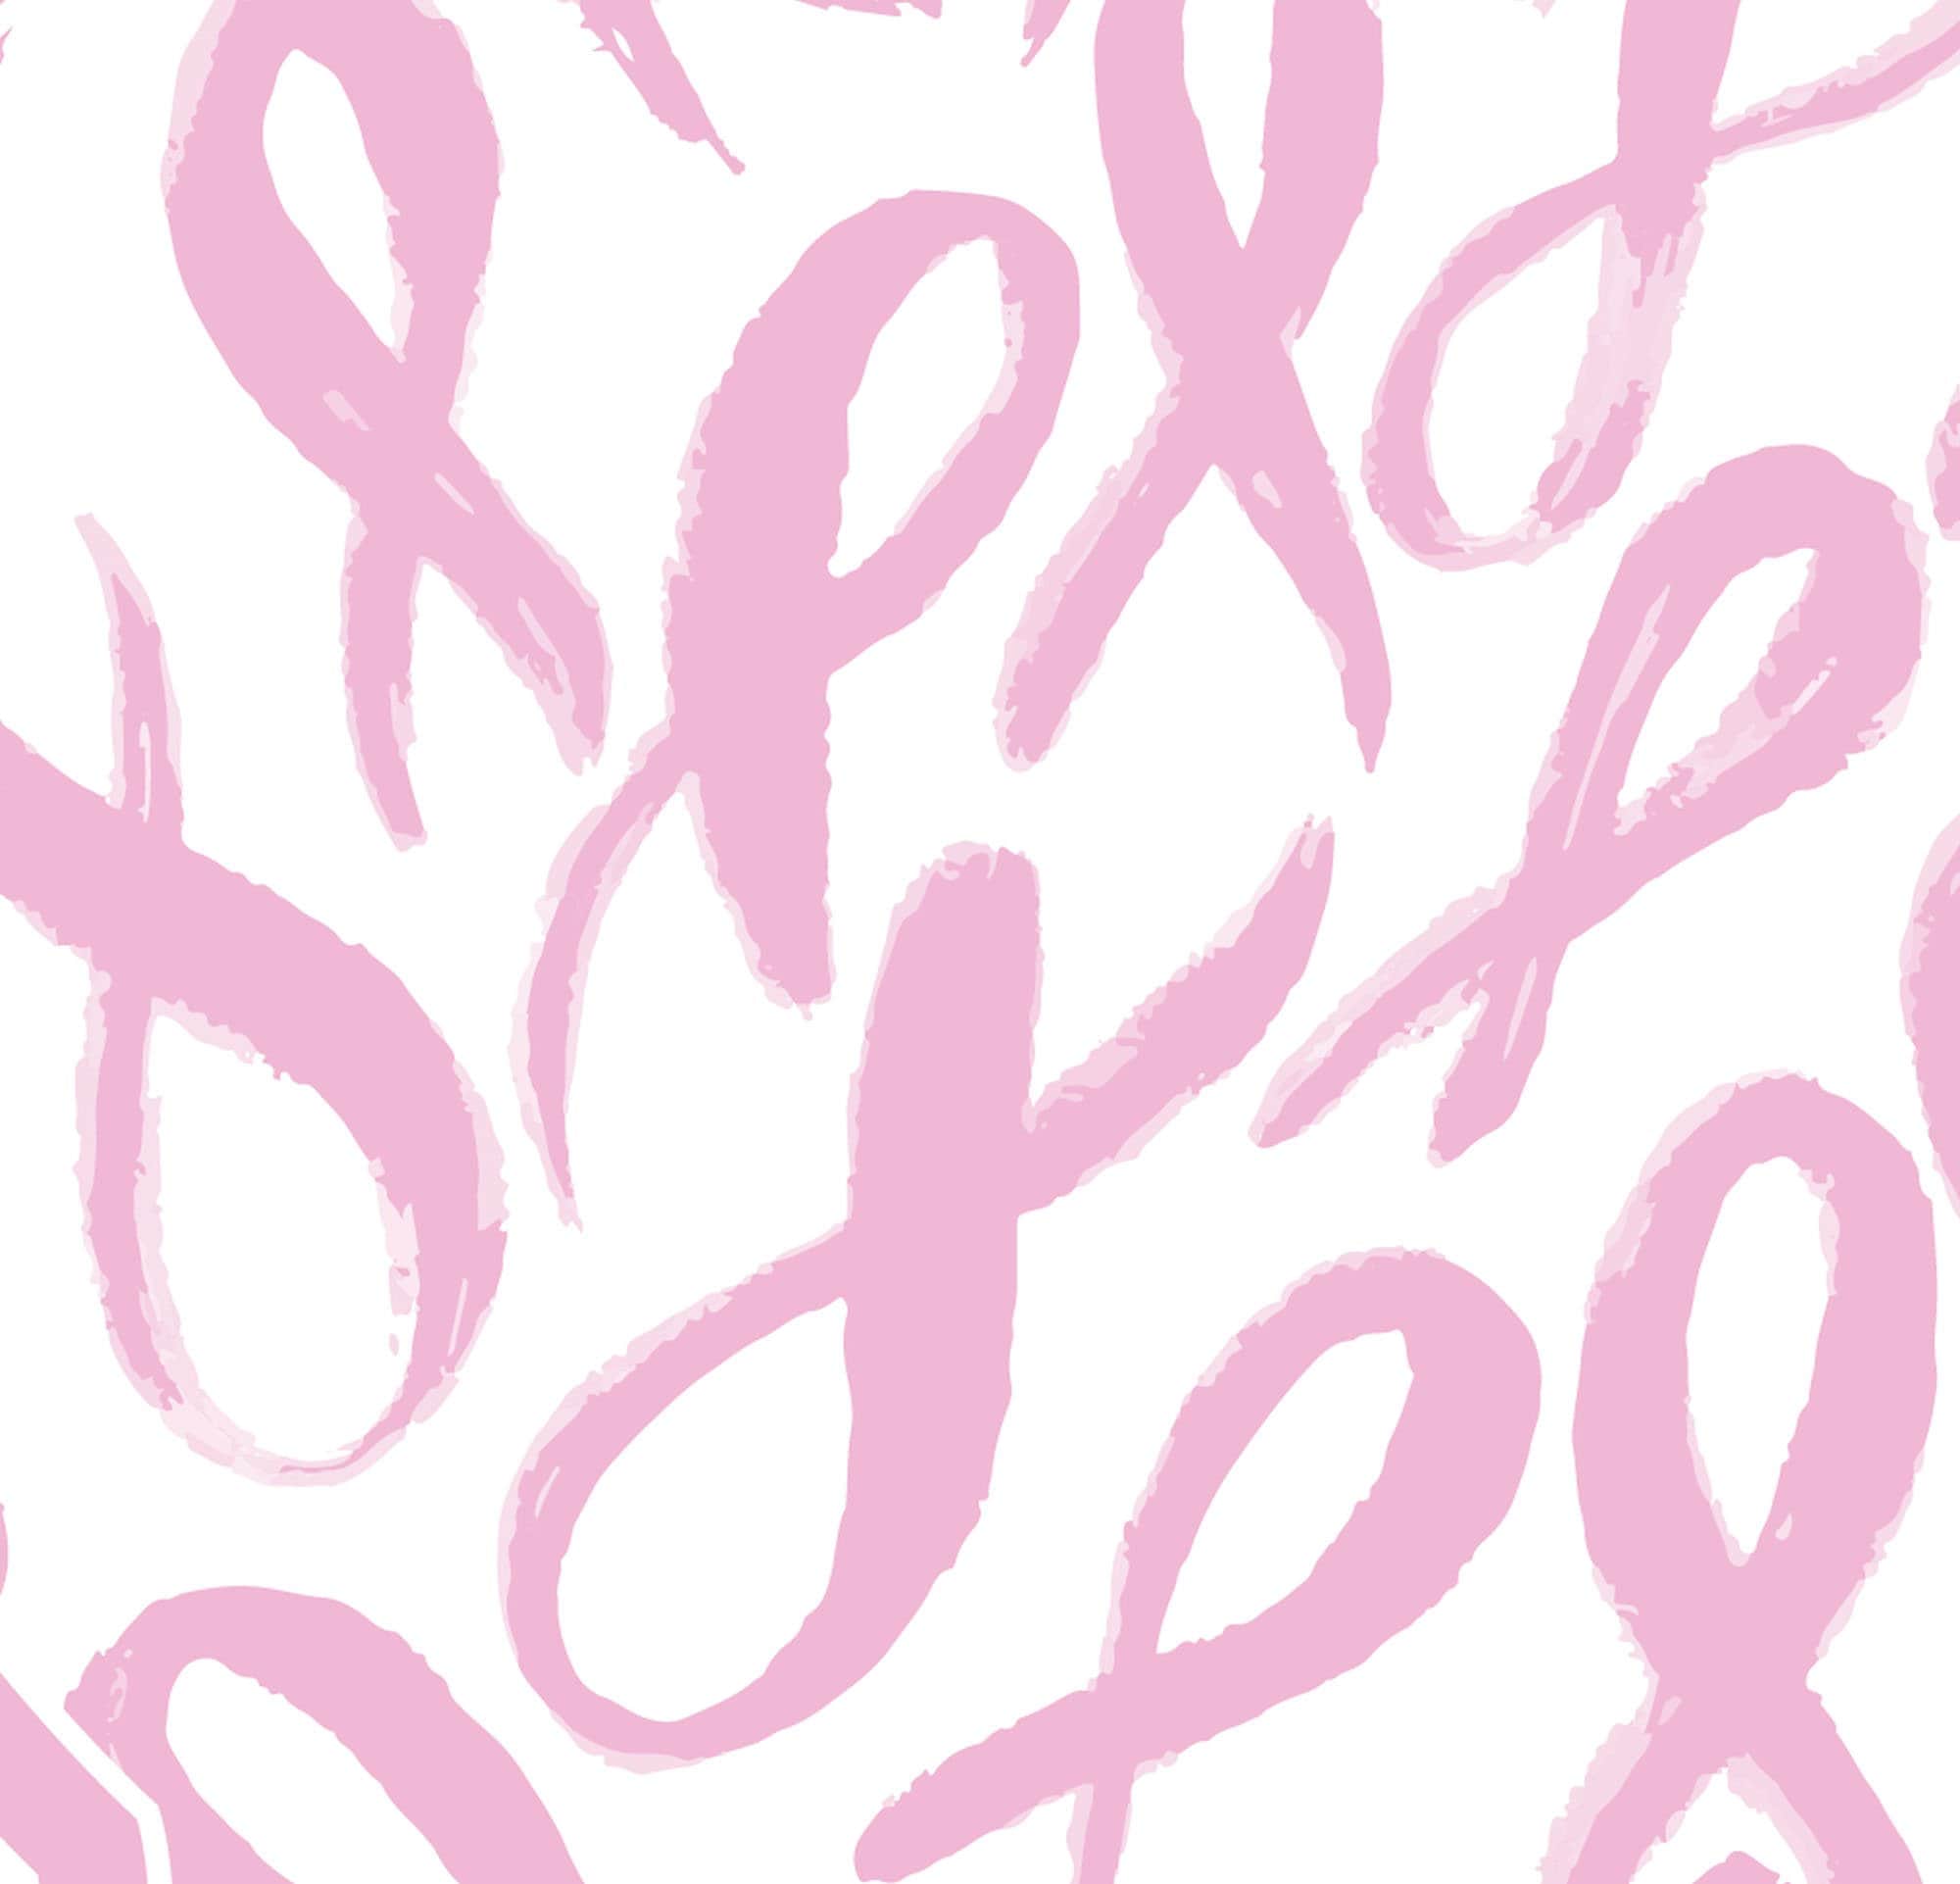 Breast Cancer Survivors, Part 1: Jamie